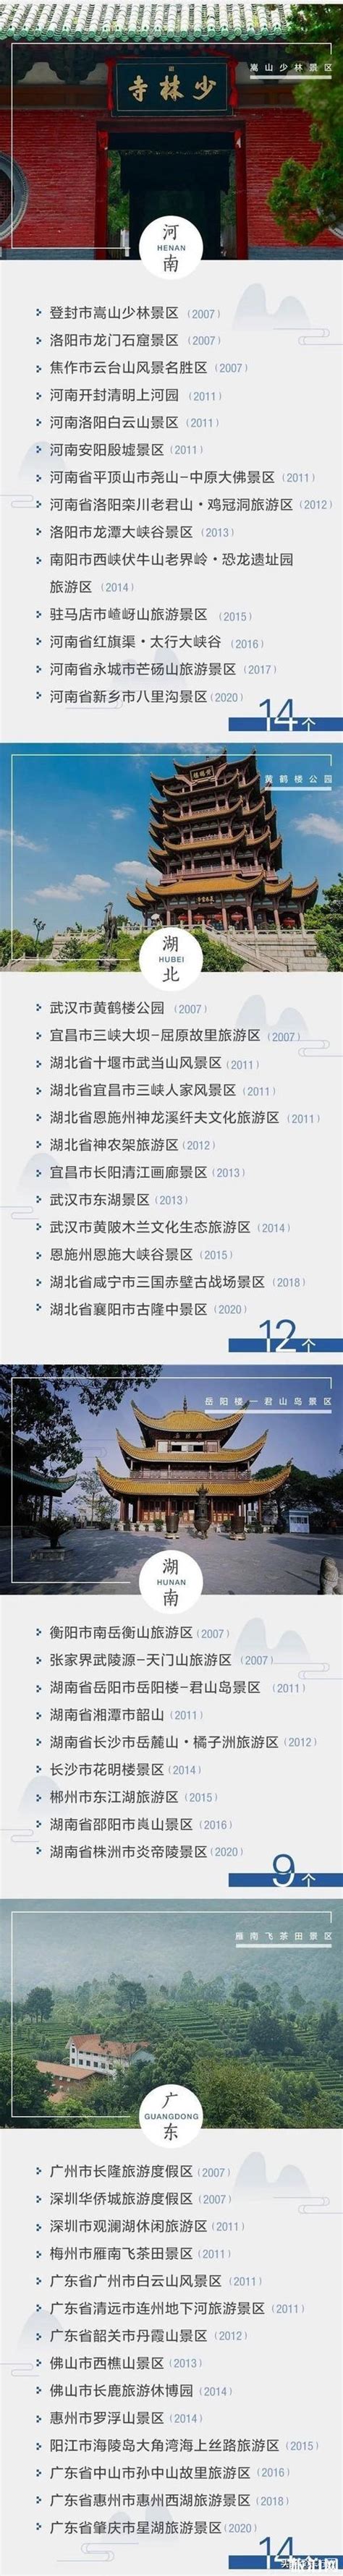 2020中国5a景区名单最新 中国5a旅游景区有多少个_旅泊网